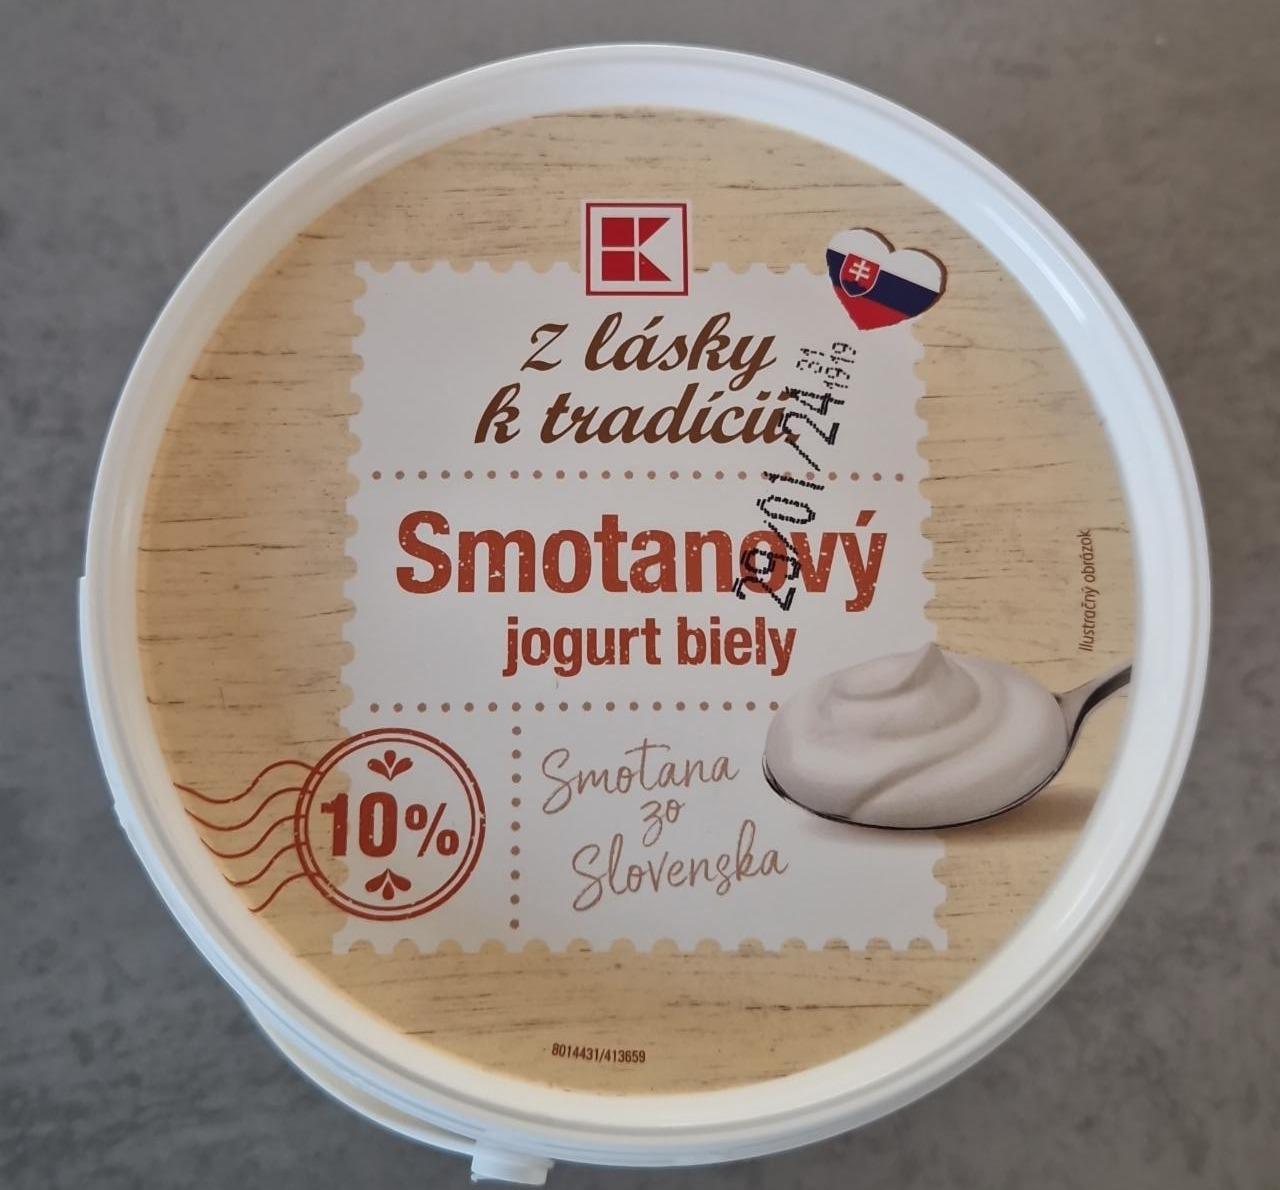 Fotografie - Smotanový jogurt biely 10% Z lásky k tradícii